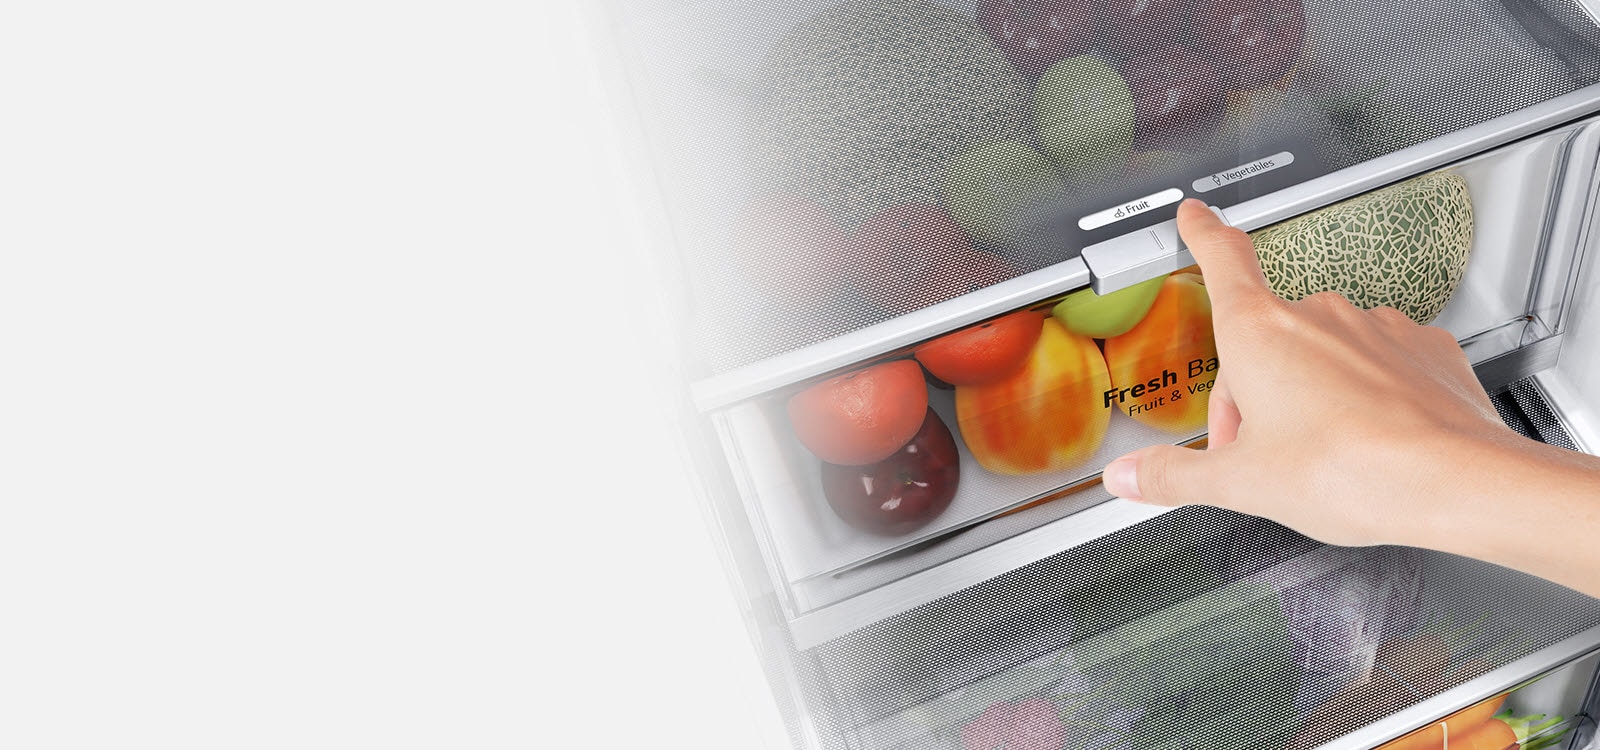 Dolné zásuvky chladničky sú naplnené pestrofarebnými čerstvými plodinami. Na vsadenom obrázku je zväčšený regulátor, ktorý umožňuje vybrať optimálnu úroveň vlhkosti, aby plodiny zostali čerstvé.